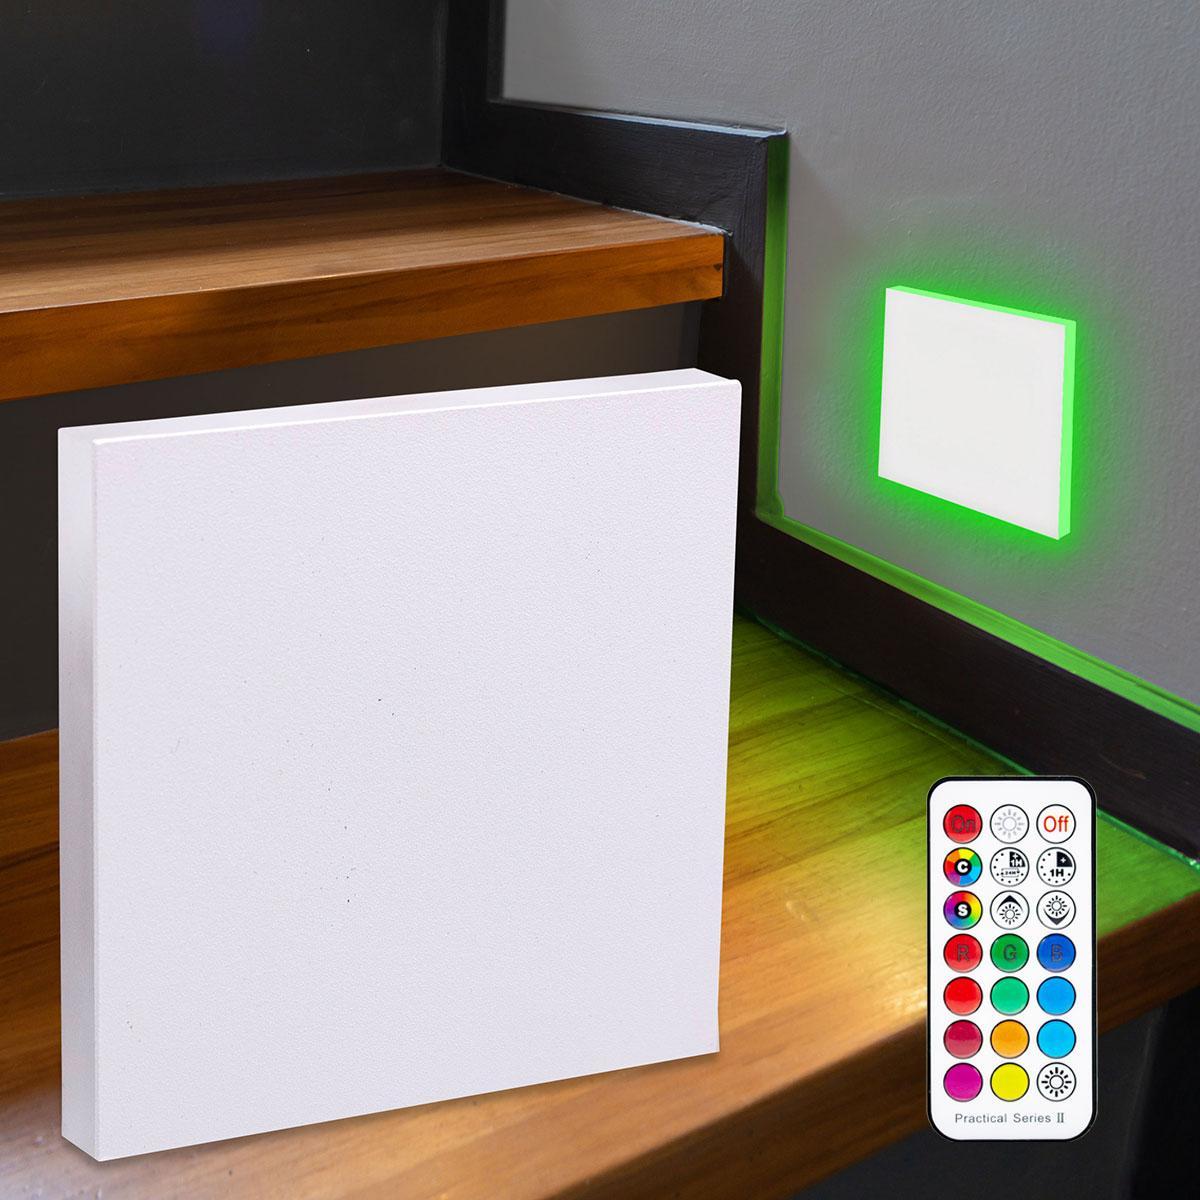 LED Treppenleuchte eckig weiß - Lichtfarbe: RGB Warmweiß 3W - Lichtaustritt: Linea